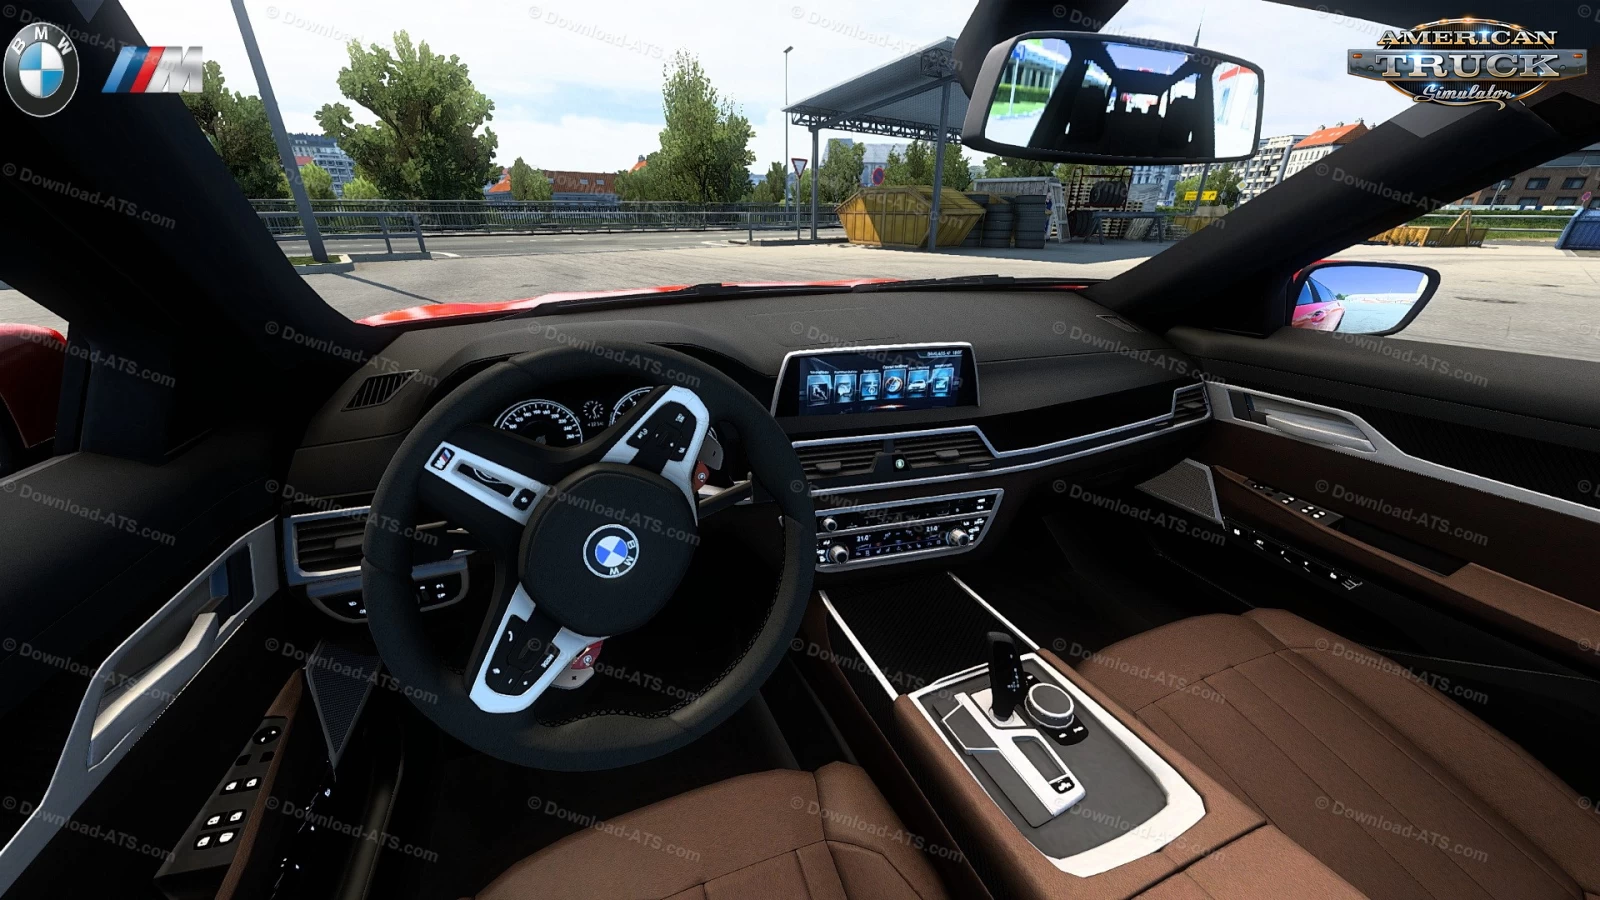 BMW G21 Touring + Interior v1.0 (1.41.x) for ATS